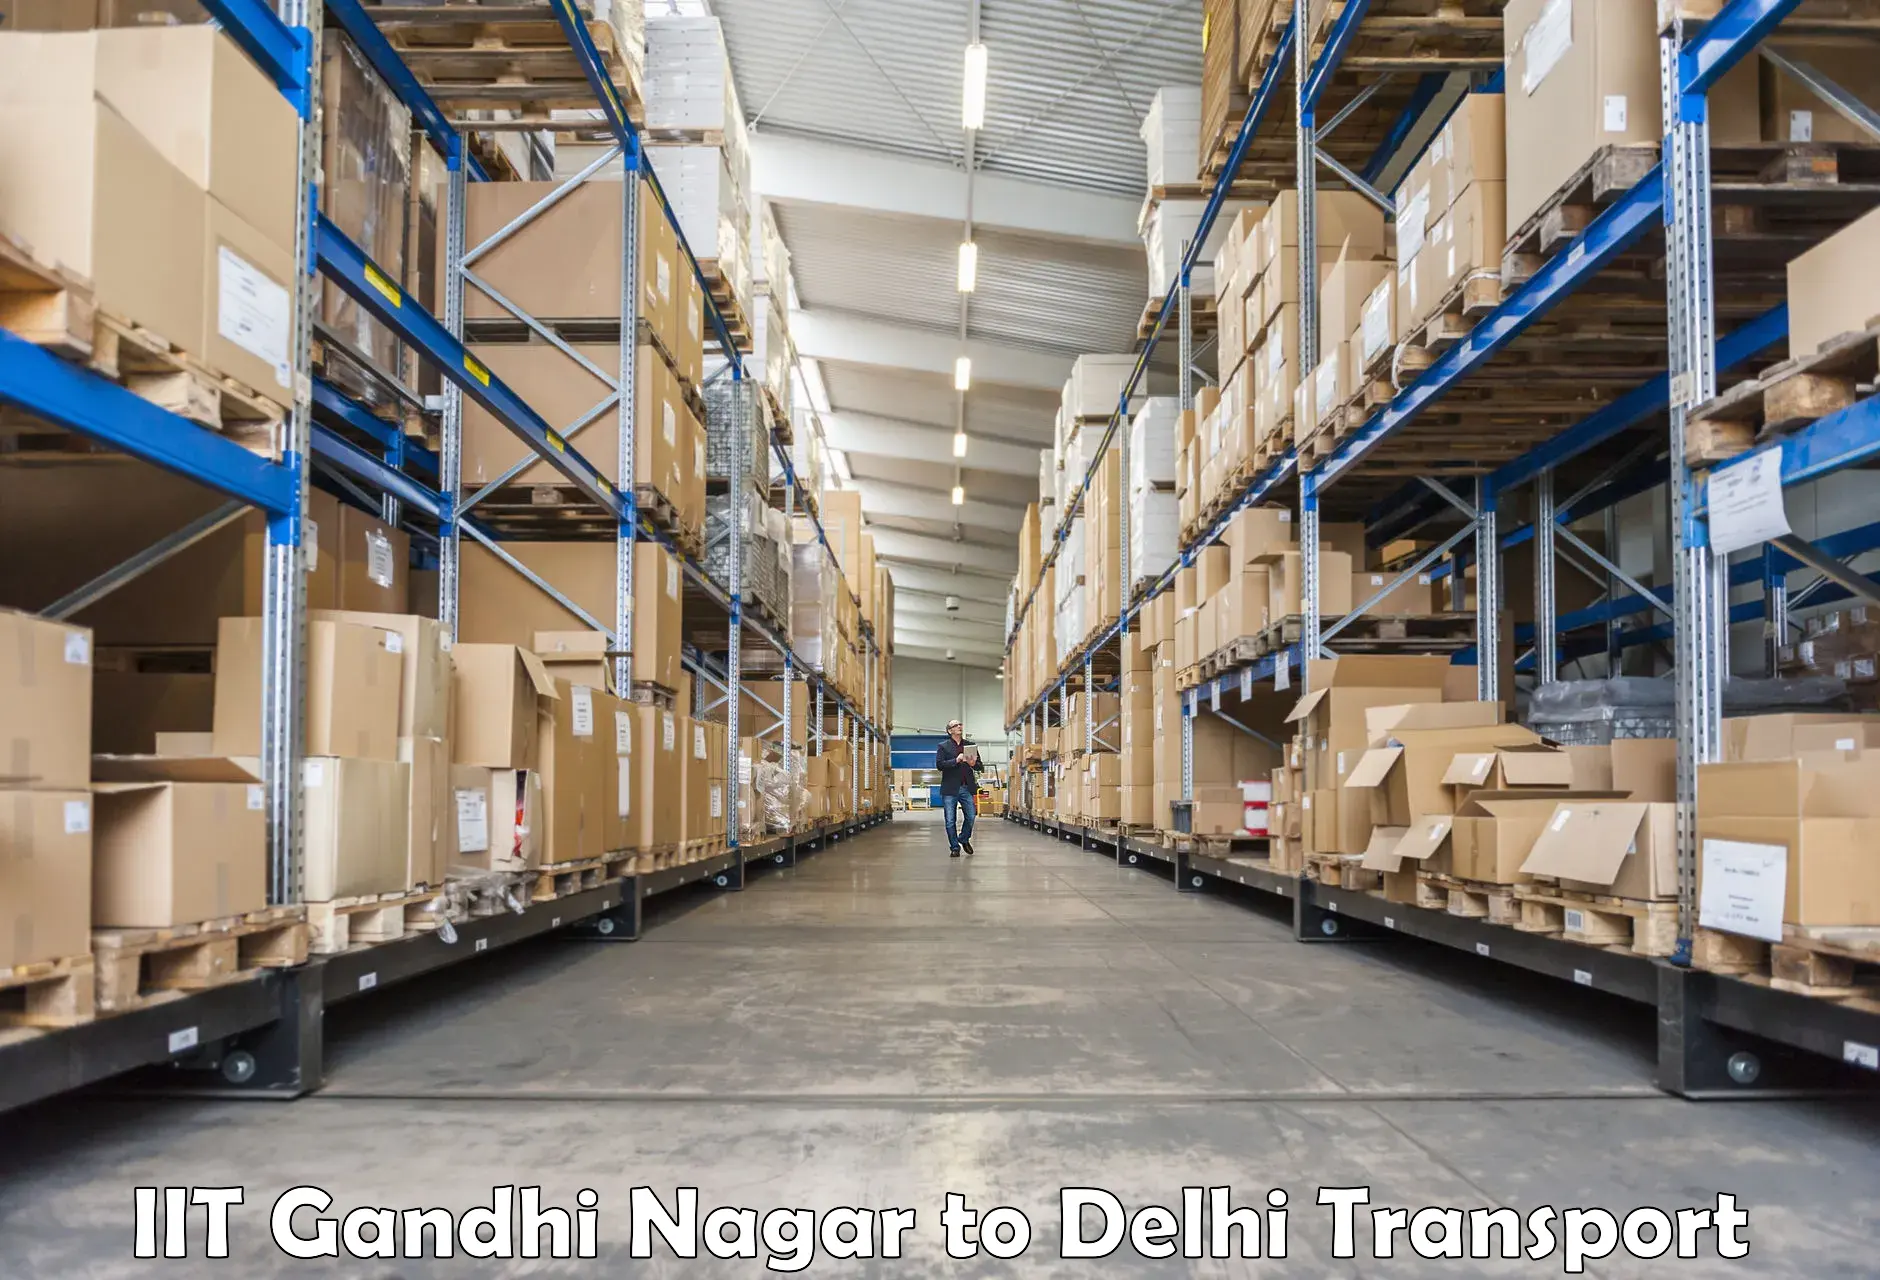 Container transport service IIT Gandhi Nagar to IIT Delhi